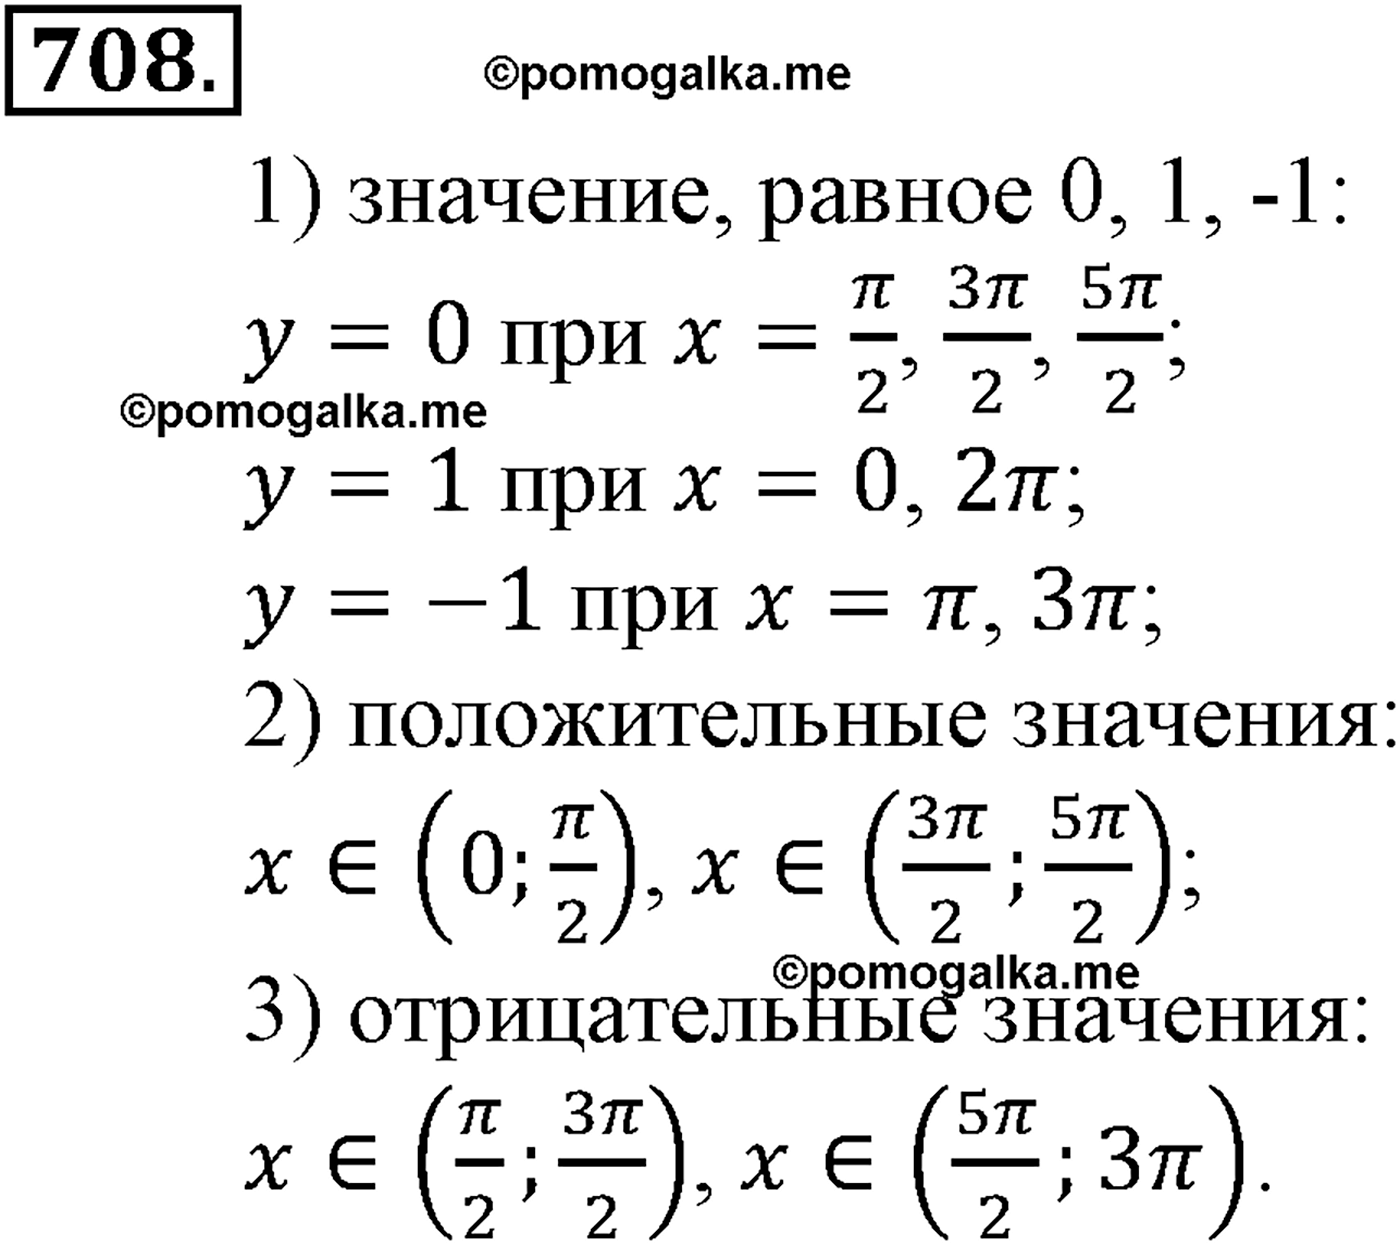 разбор задачи №708 по алгебре за 10-11 класс из учебника Алимова, Колягина